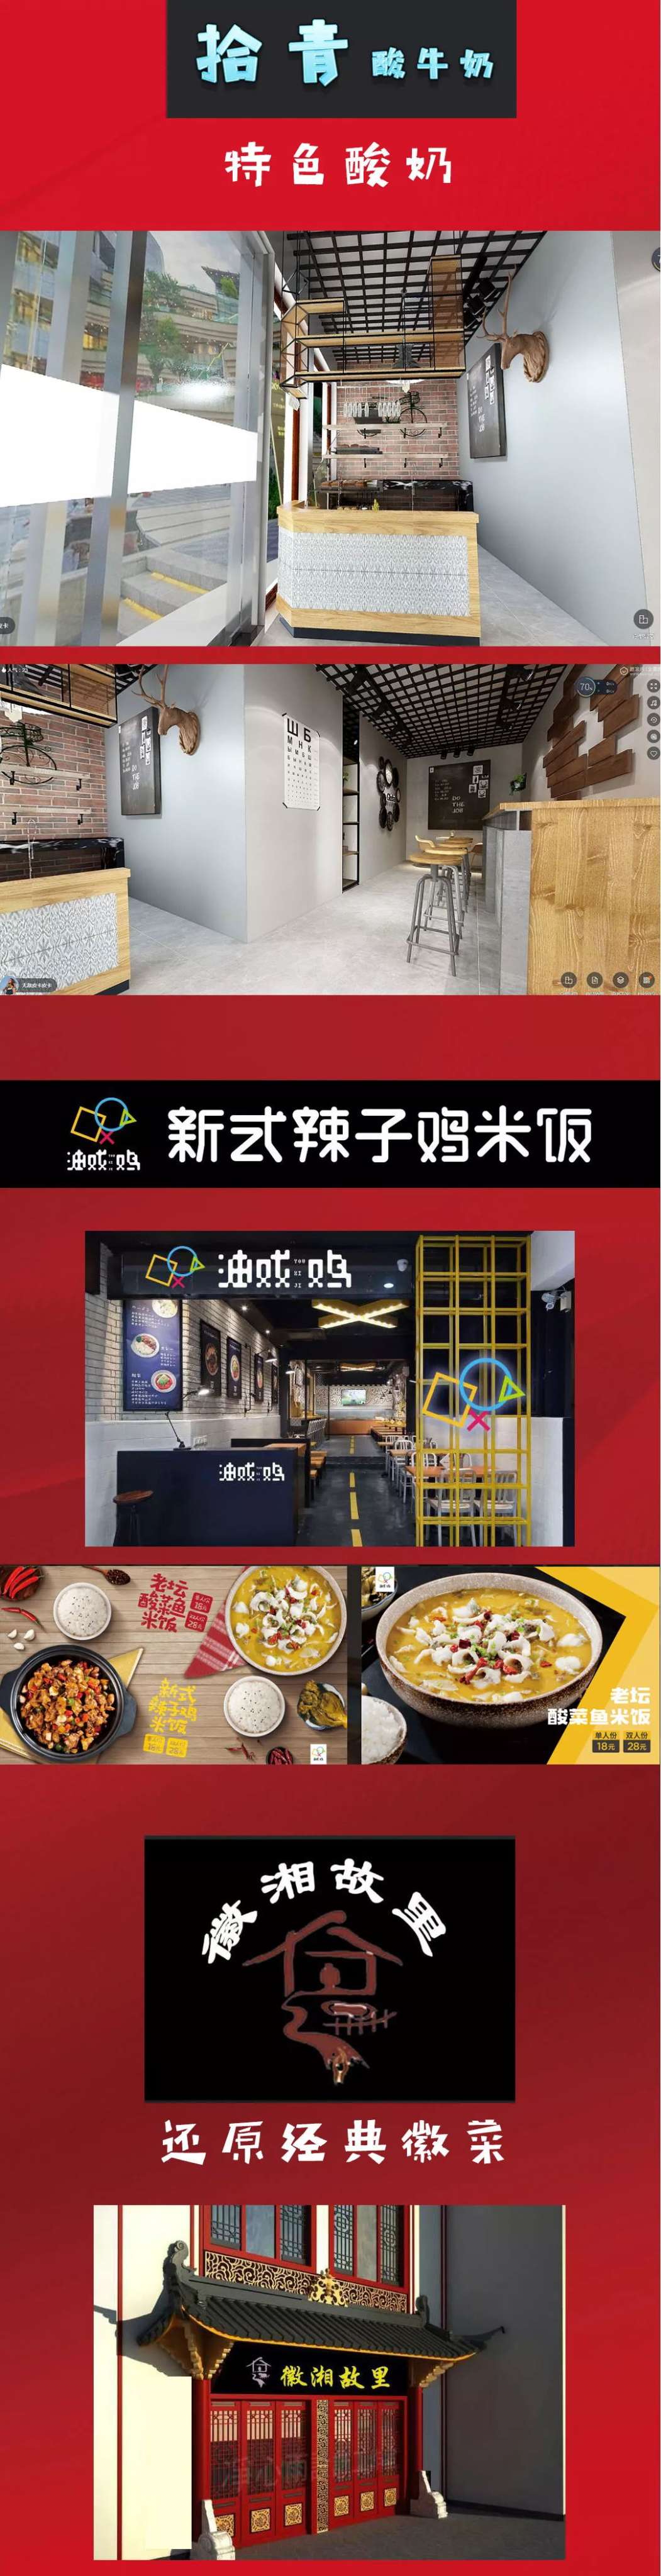 12_看图王.web.jpg